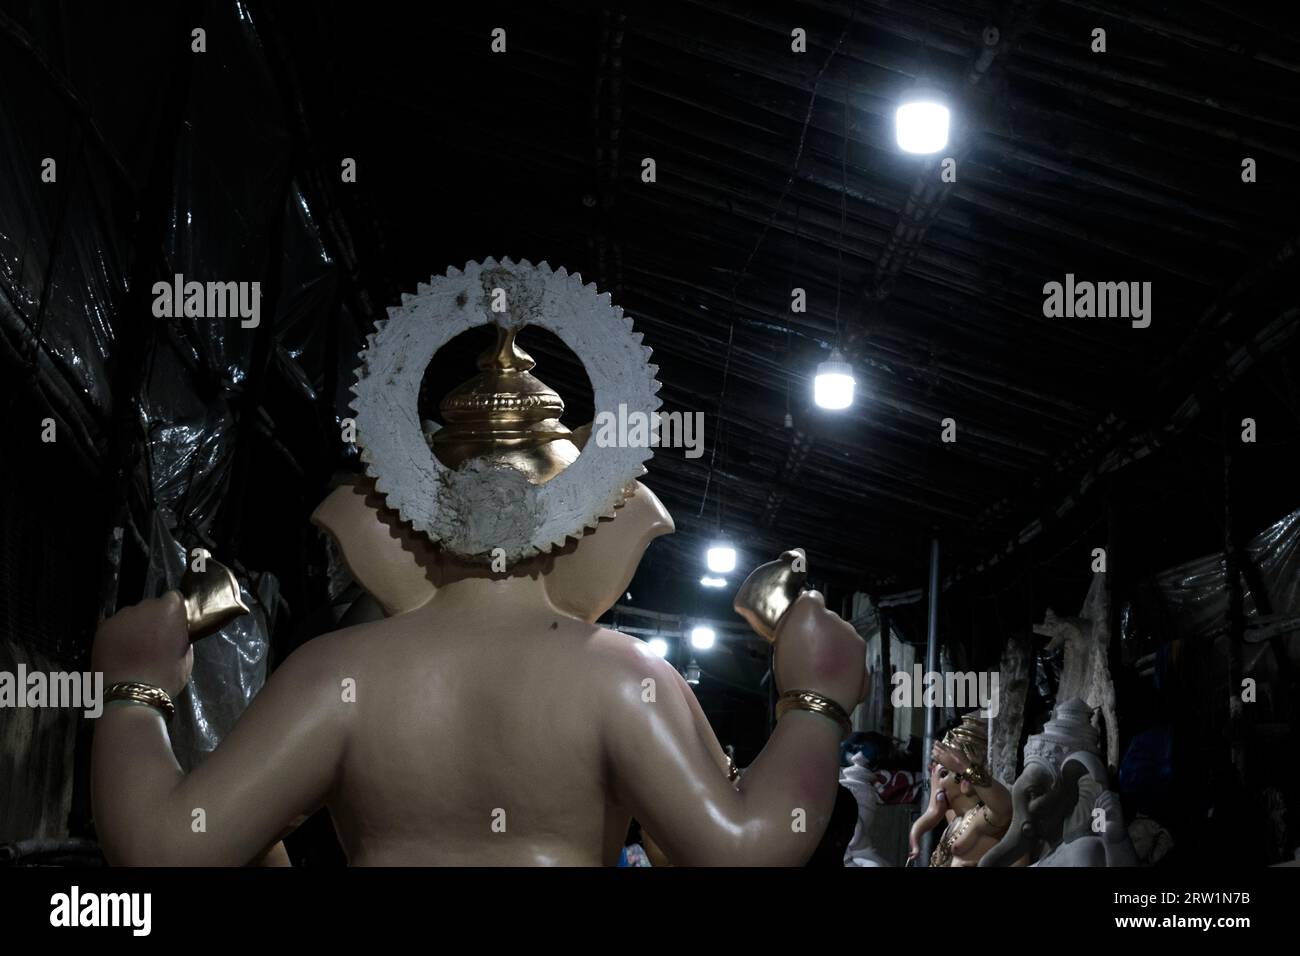 Ein wunderschönes Idol von Lord Ganpati, ausgestellt in einem Workshop in Mumbai, Indien, zum Festival von Ganesh Chaturthi Stockfoto